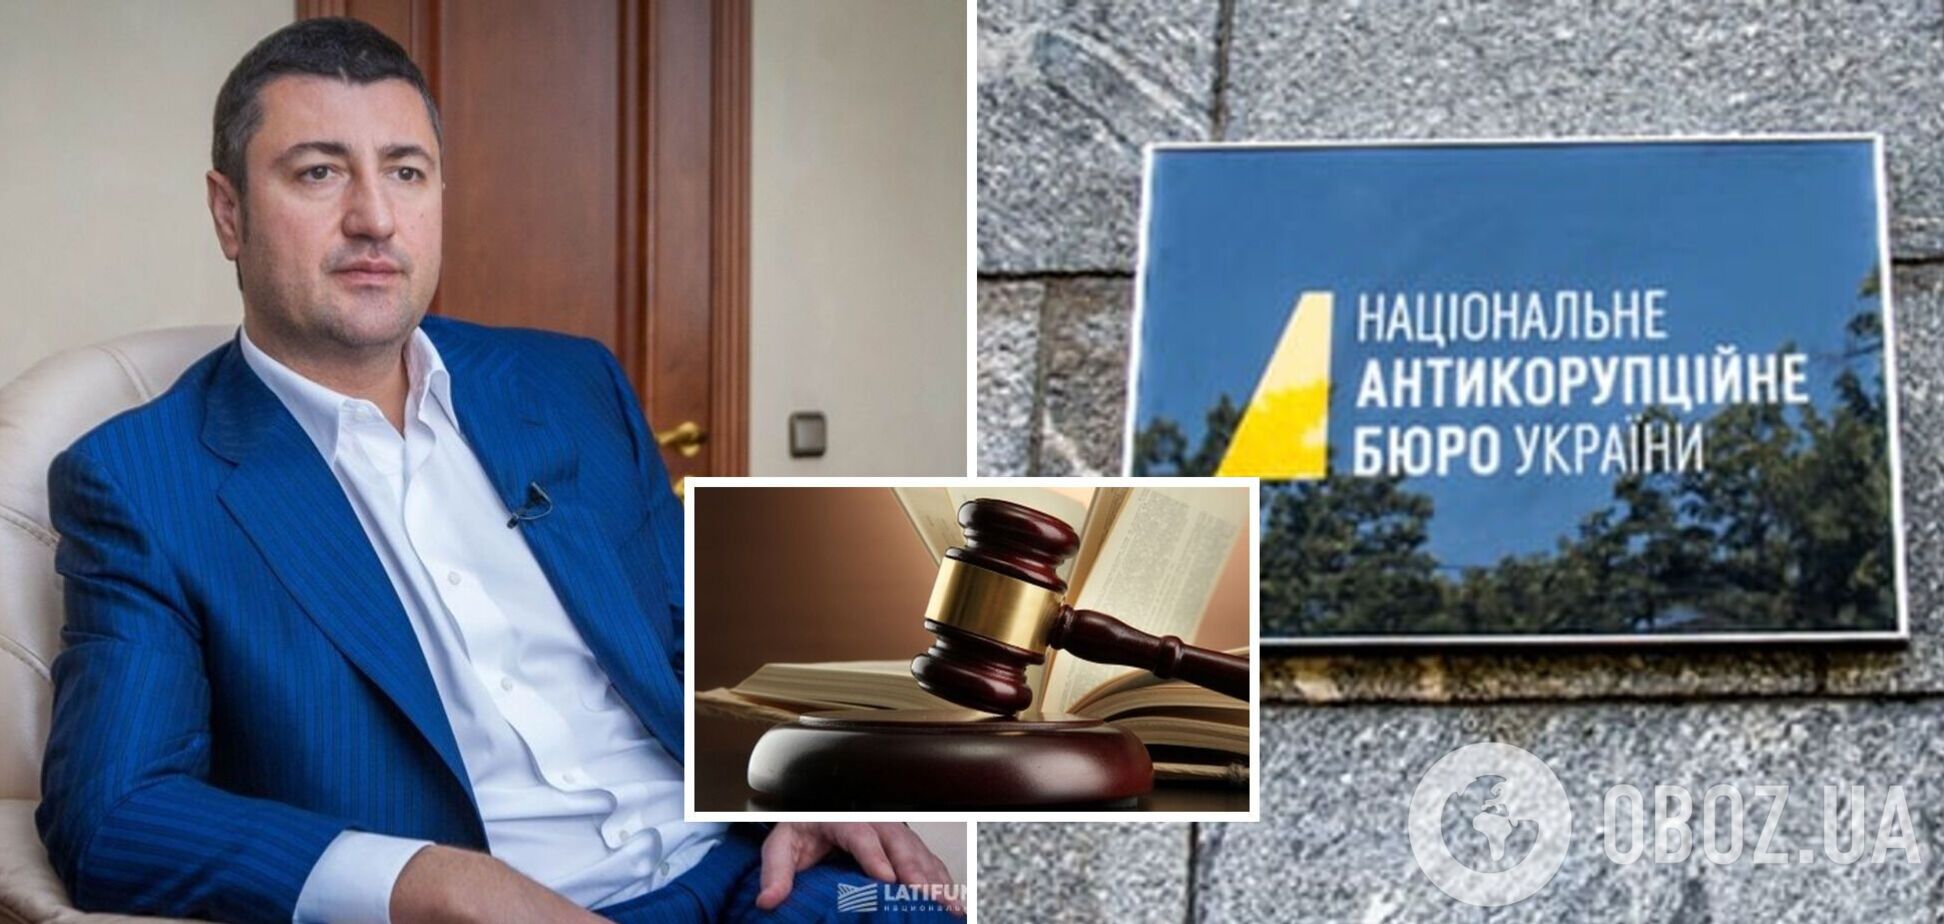 Венский суд отказал в экстрадиции Бахматюка, бизнесмен надеется на изменения в НАБУ с приходом нового руководителя